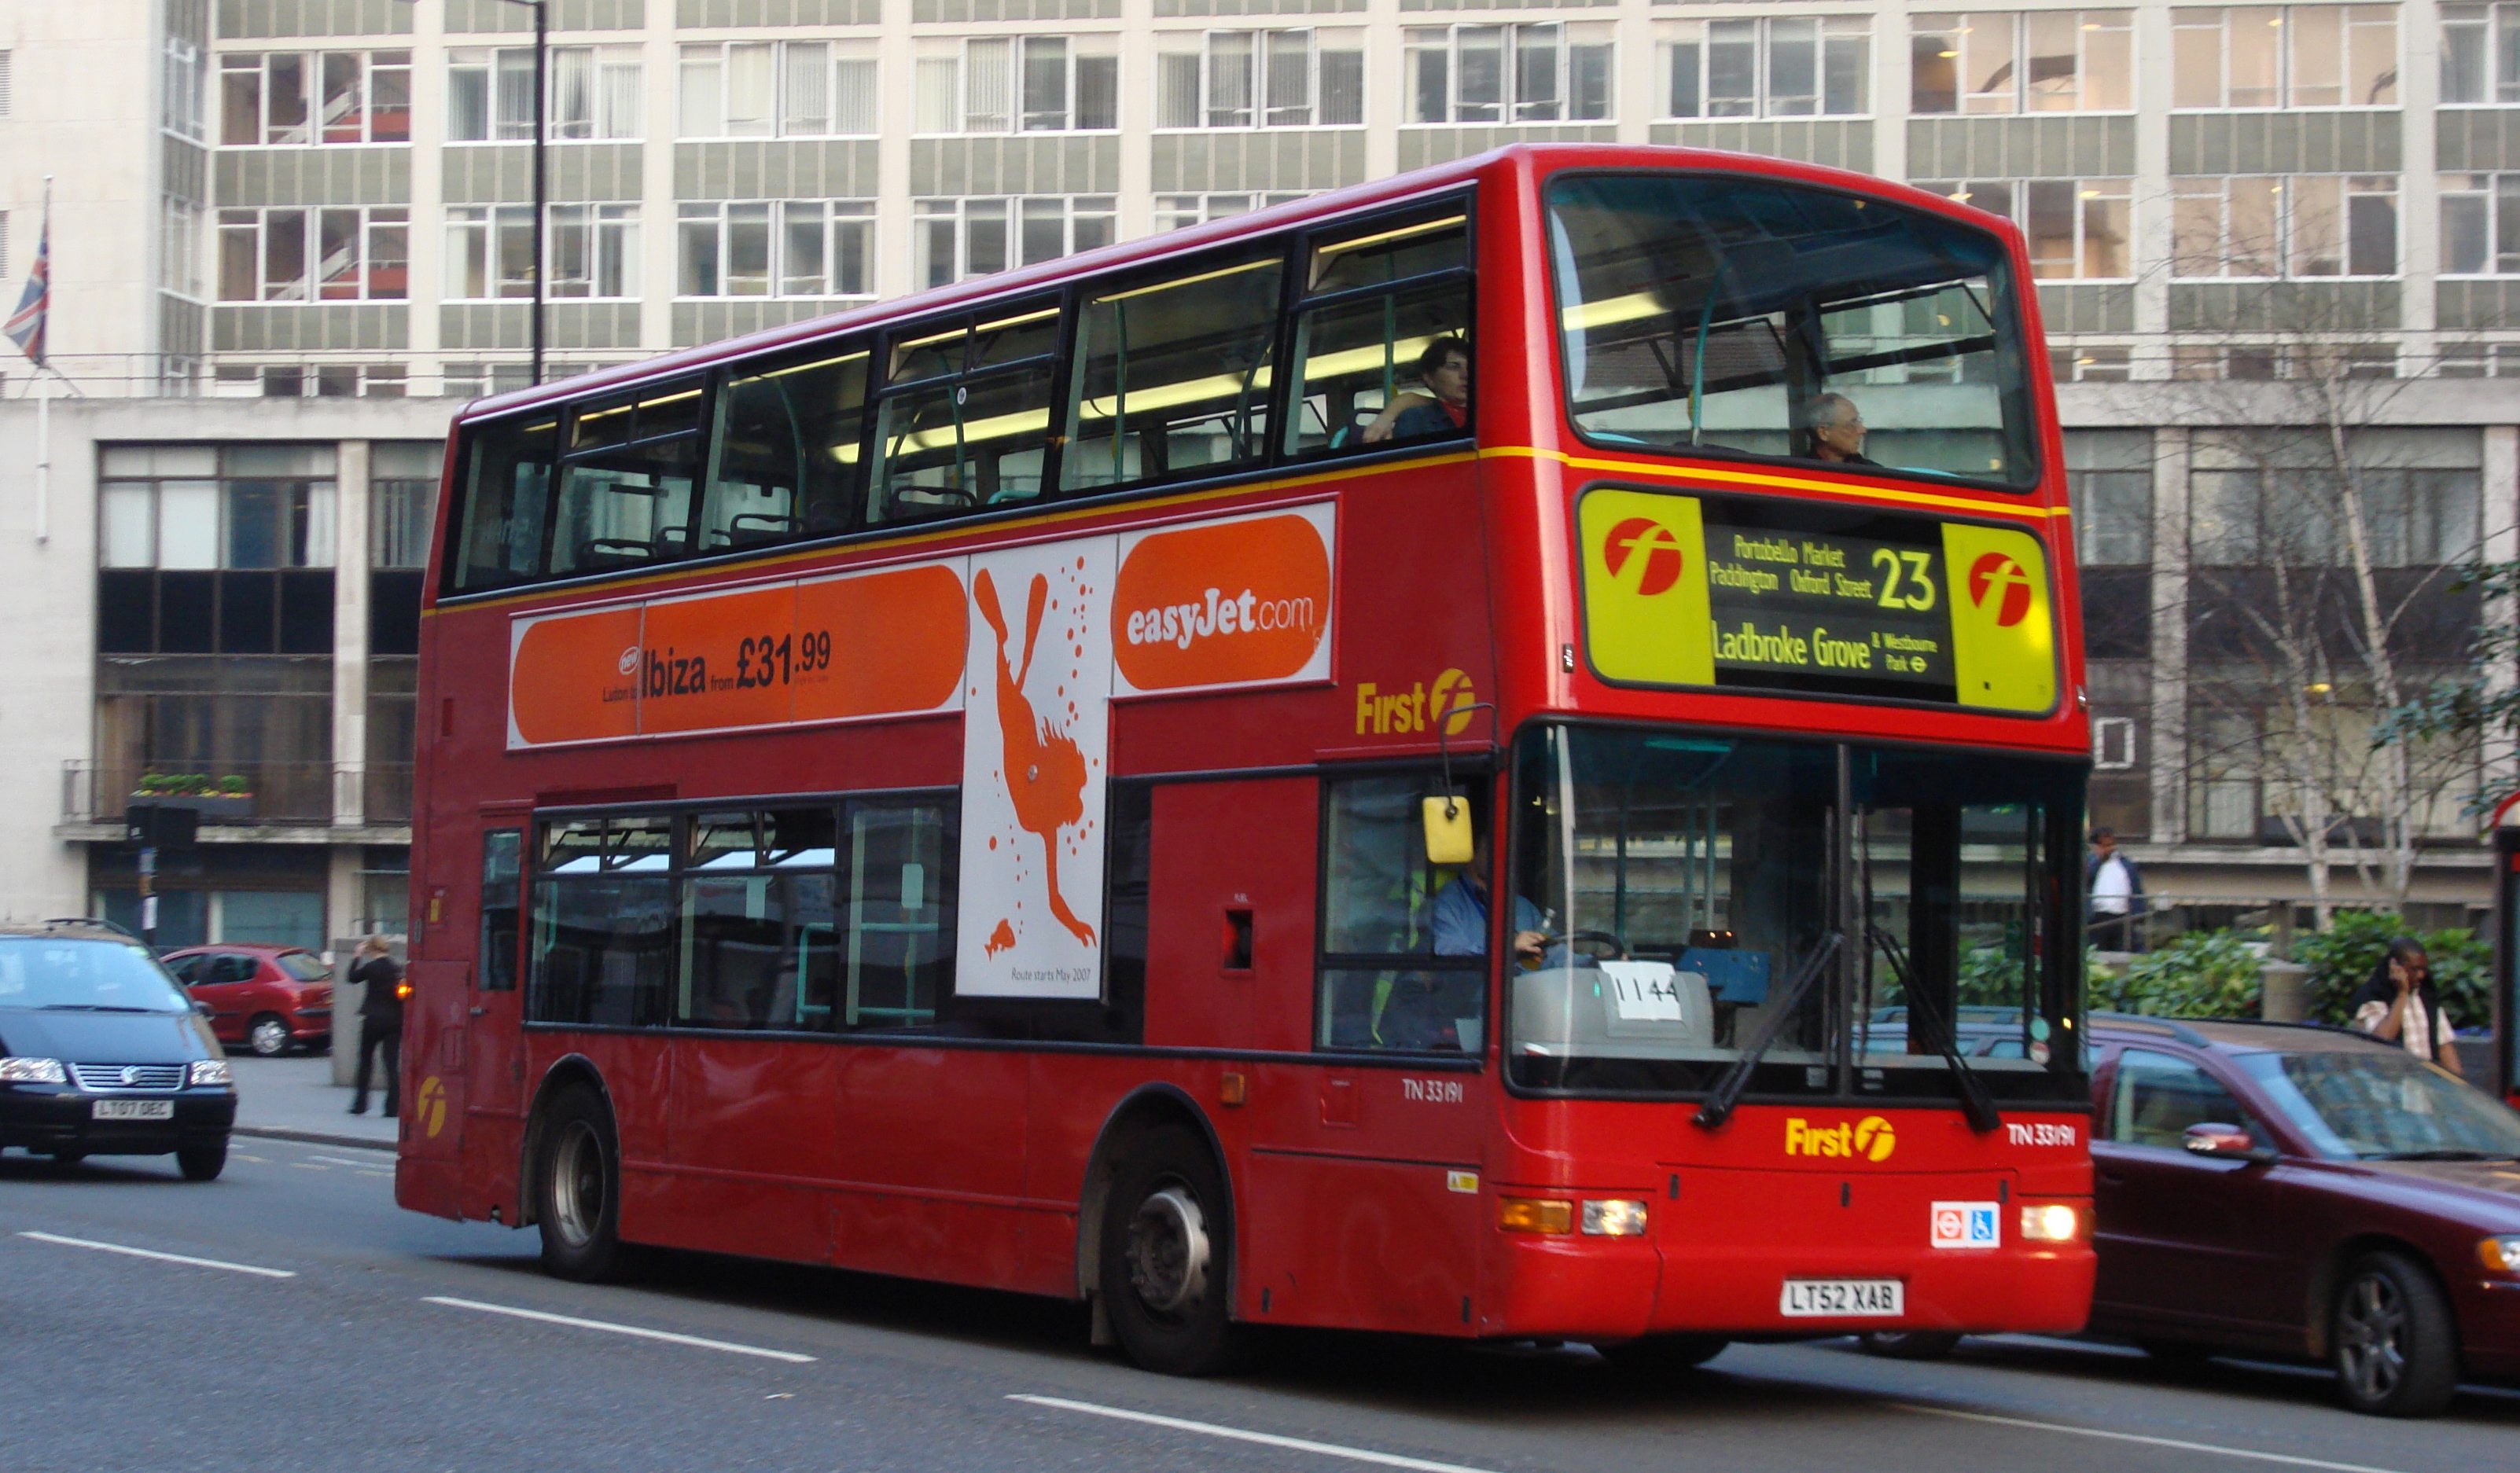 Double Floor Bus in London wallpaper